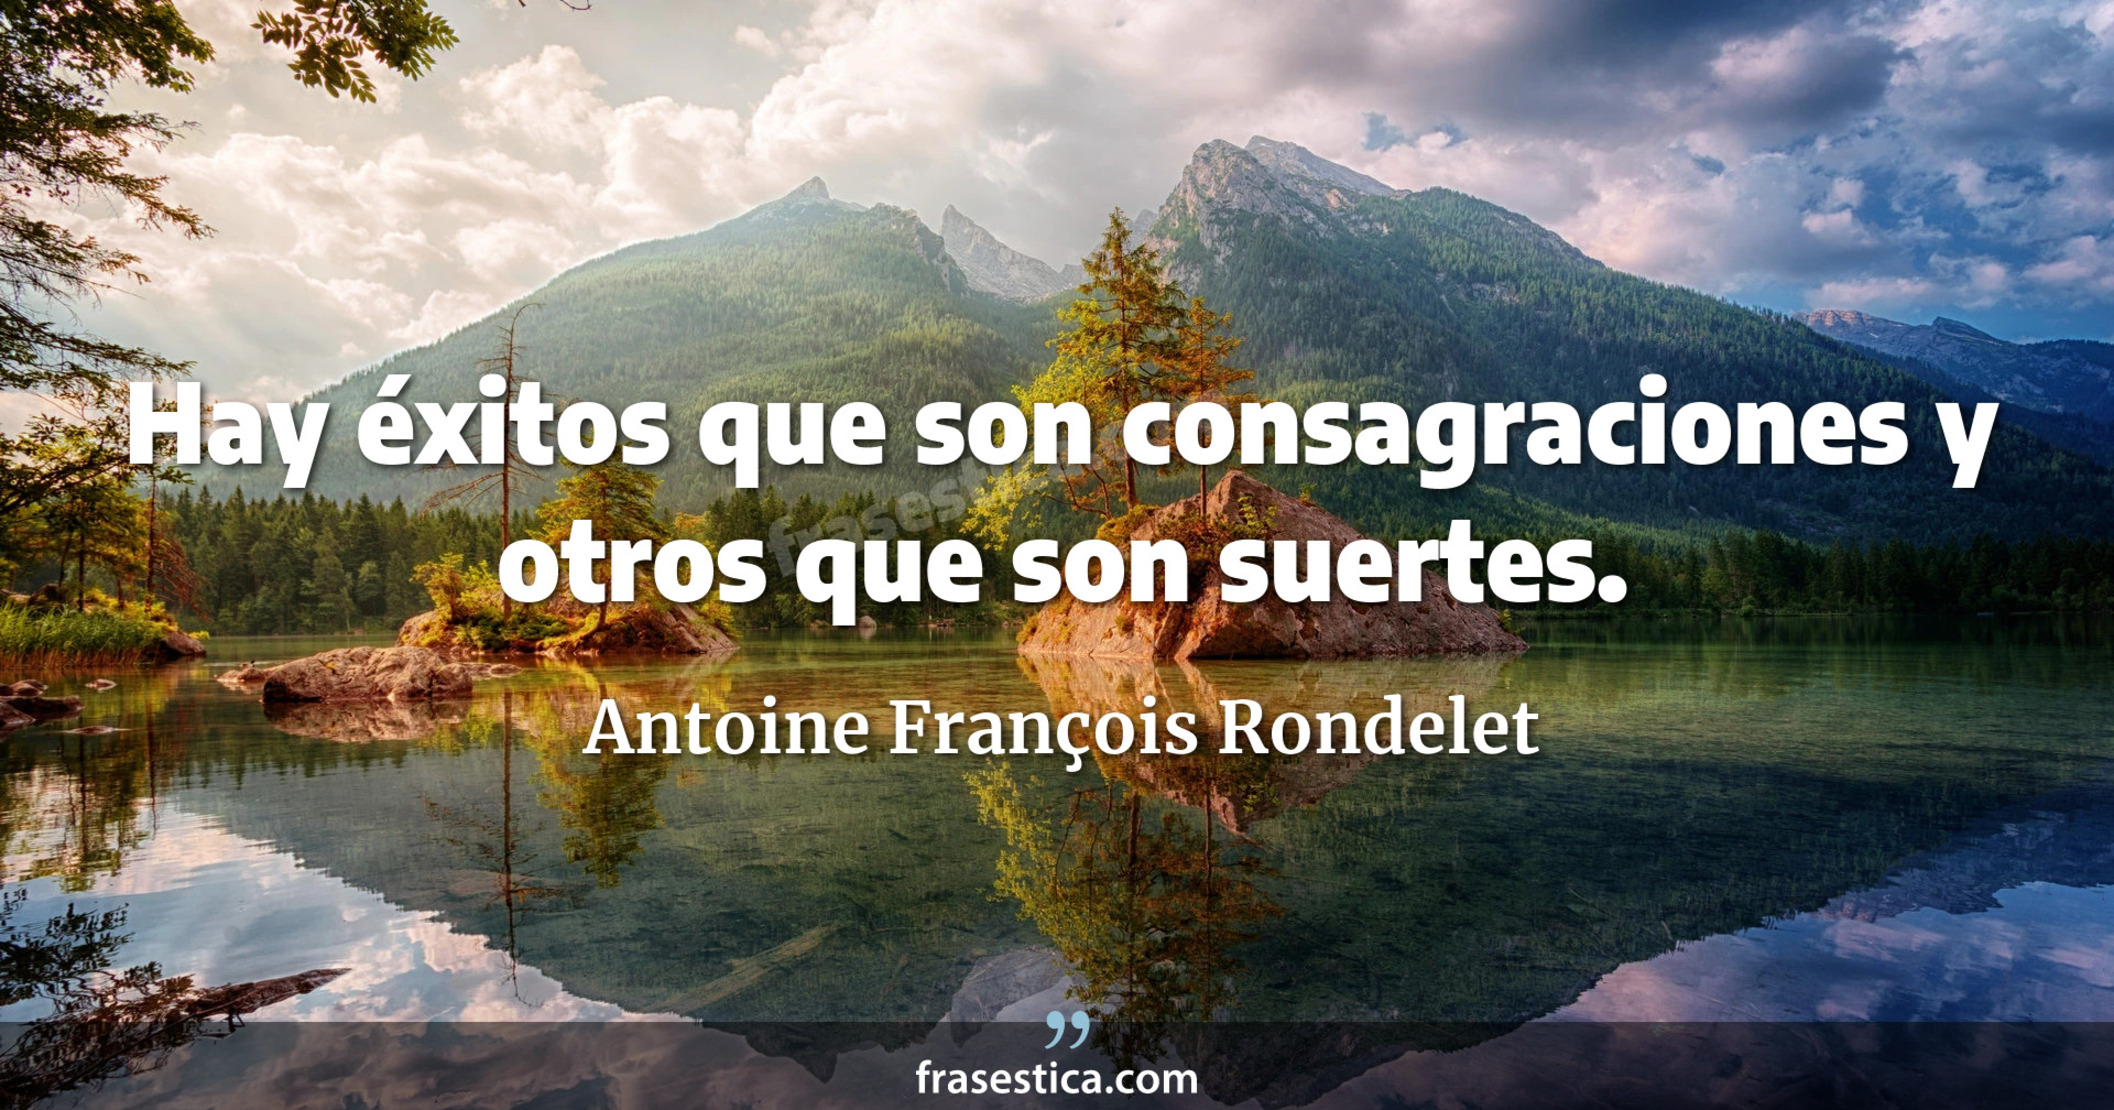 Hay éxitos que son consagraciones y otros que son suertes. - Antoine François Rondelet